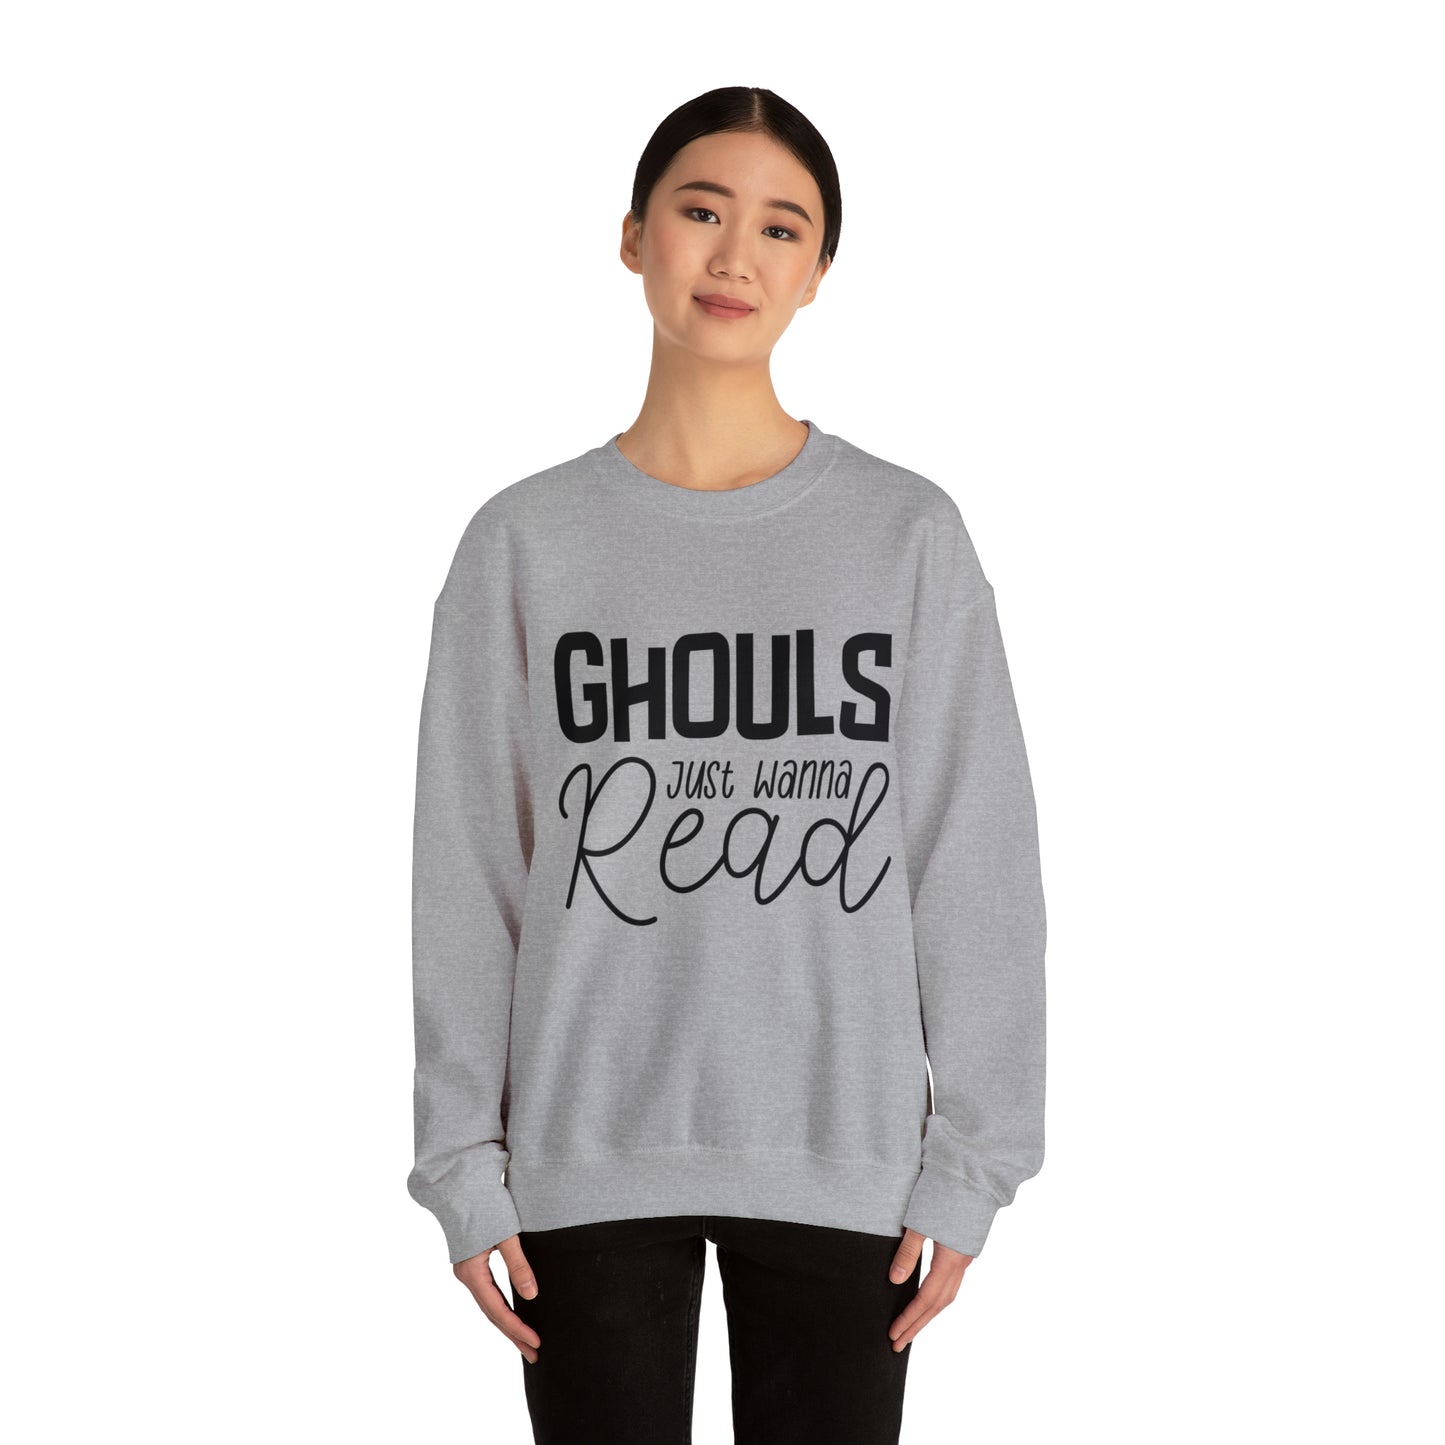 Ghouls Just Wanna Read Crewneck Sweatshirt